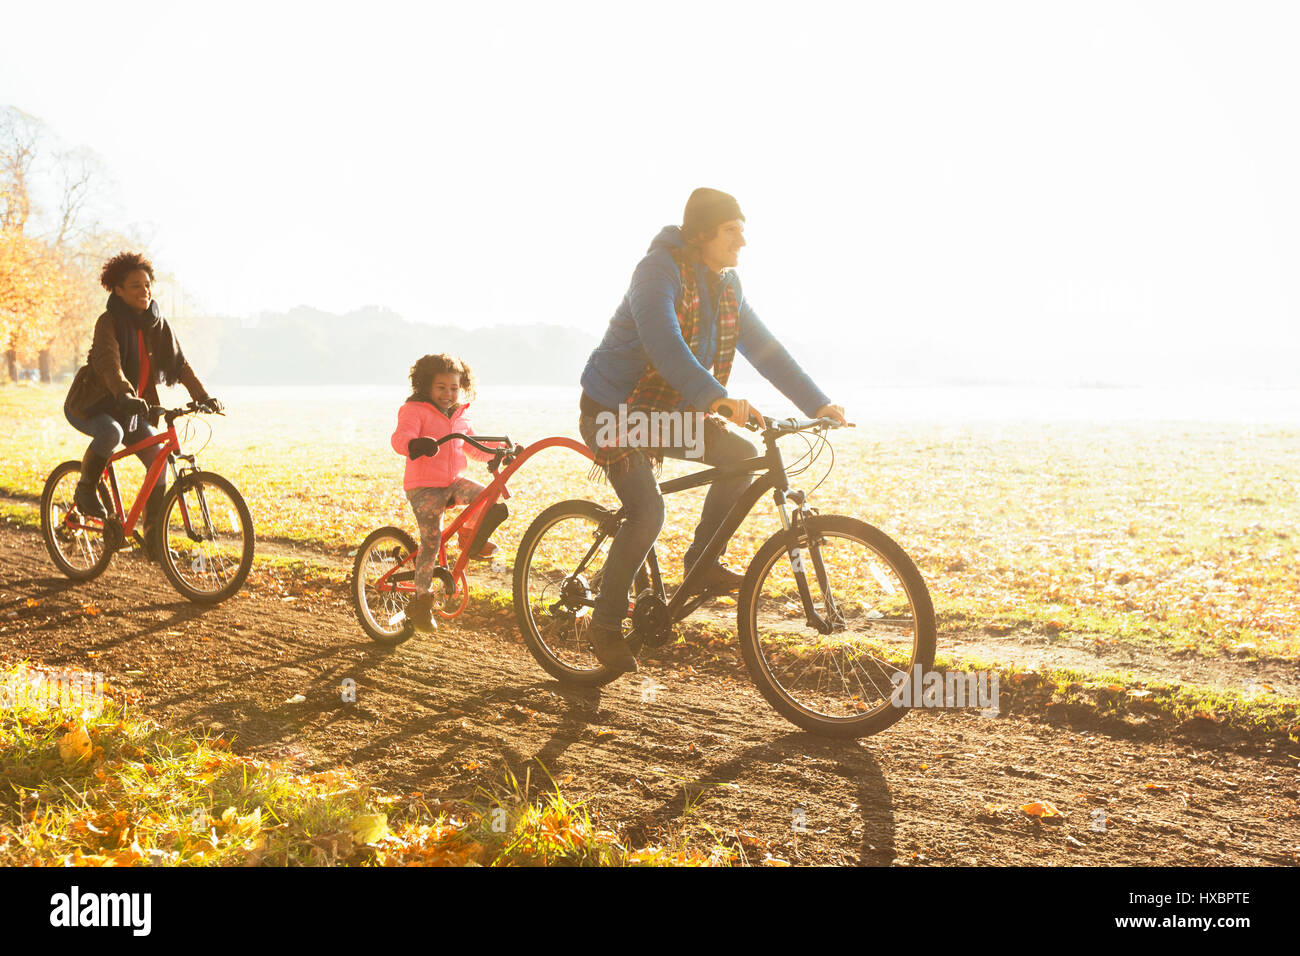 Junge Familie Radfahren auf Pfad im sonnigen Herbst park Stockfoto